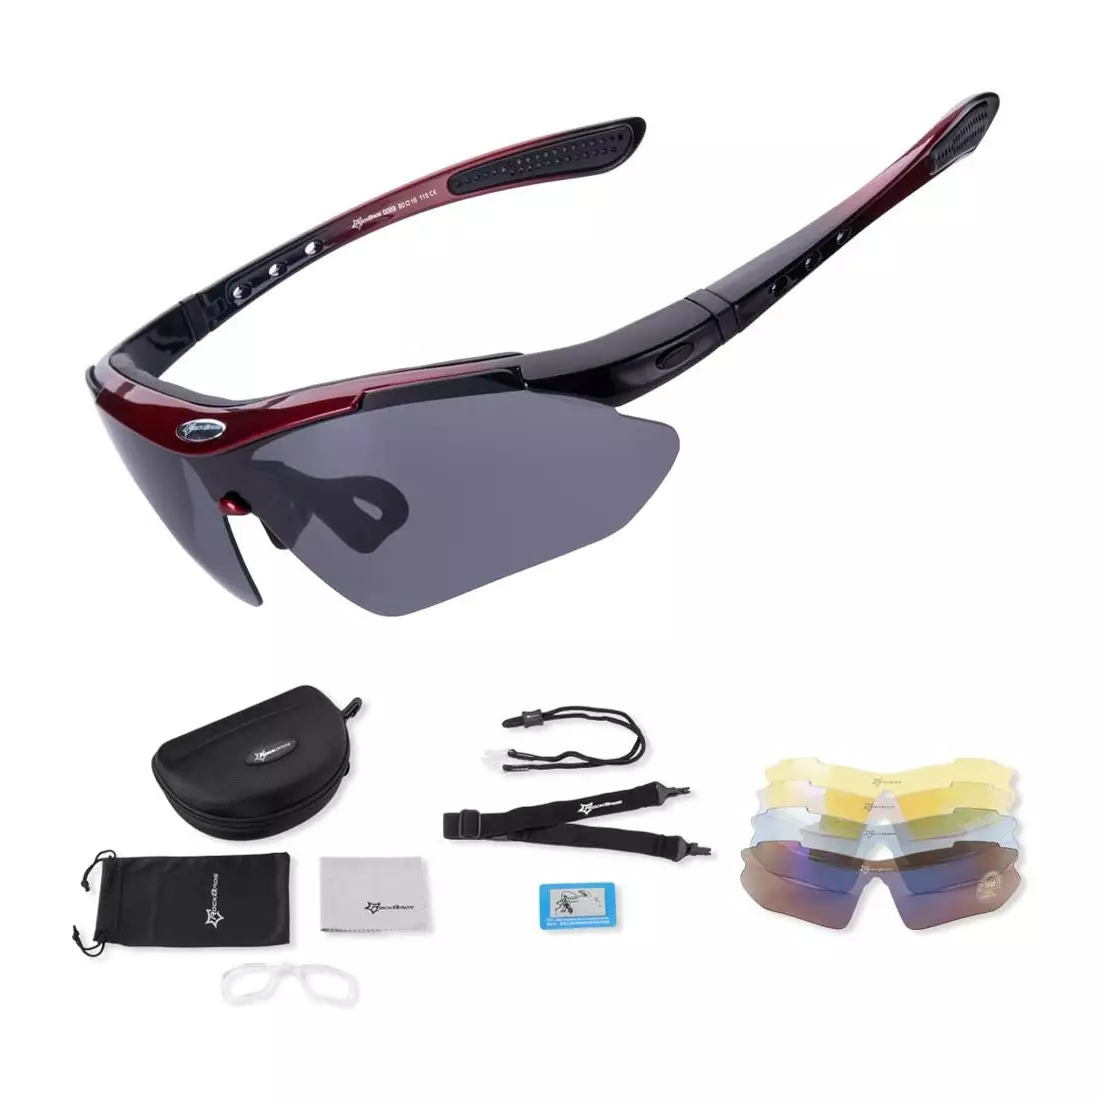 RockBros 10001 okulary rowerowe / sportowe z polaryzacją 5 soczewek wymiennych czarno-czerwone